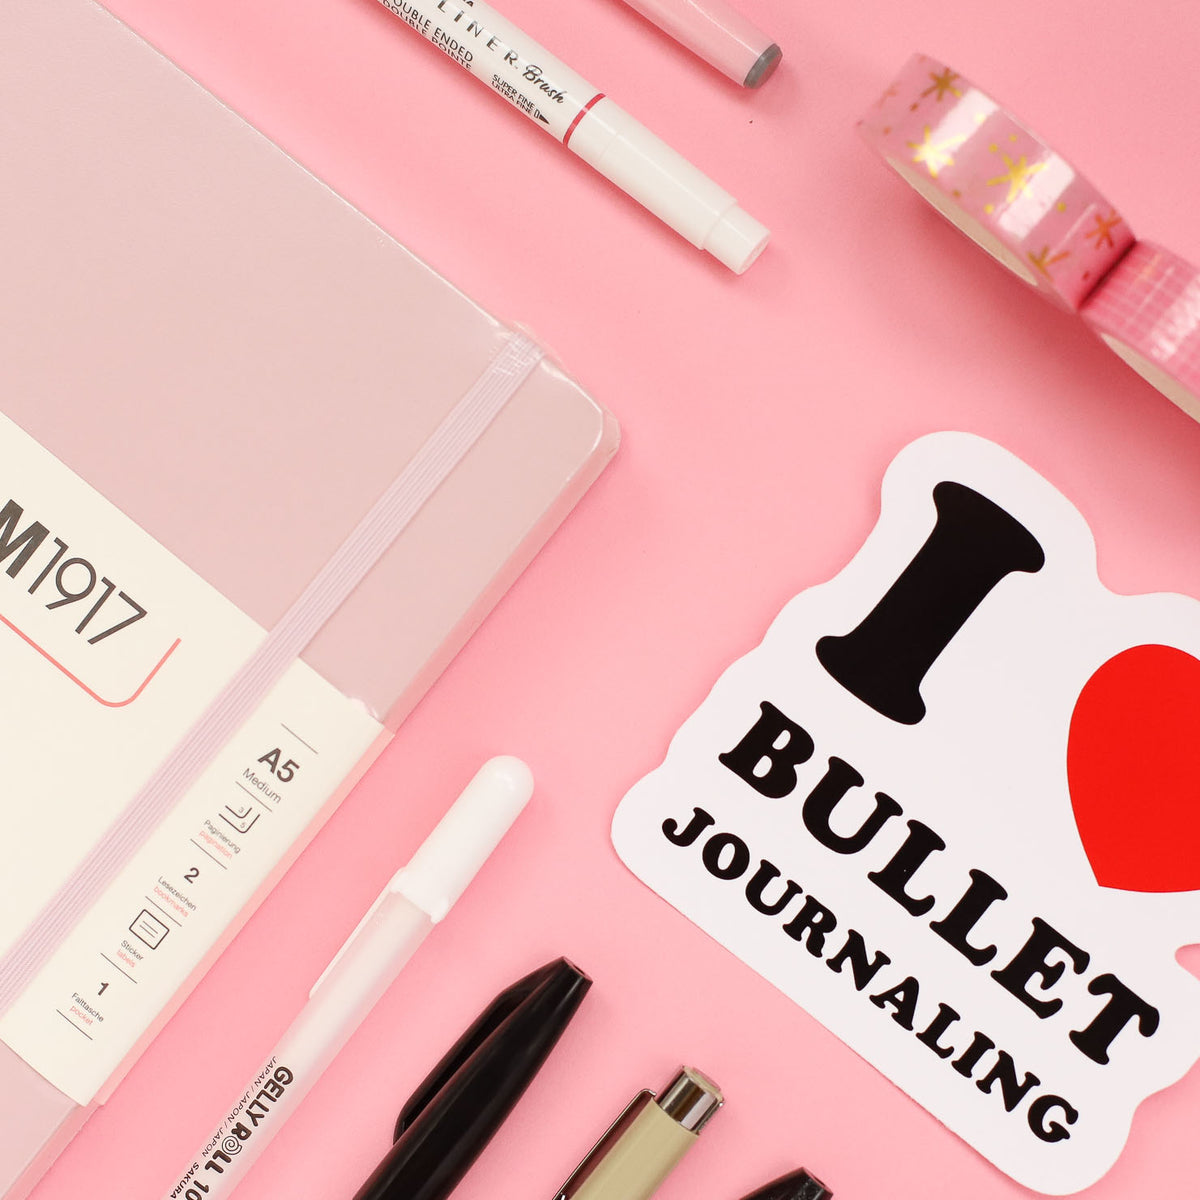 Bullet Journal Starter Kit - Slightly Sorted